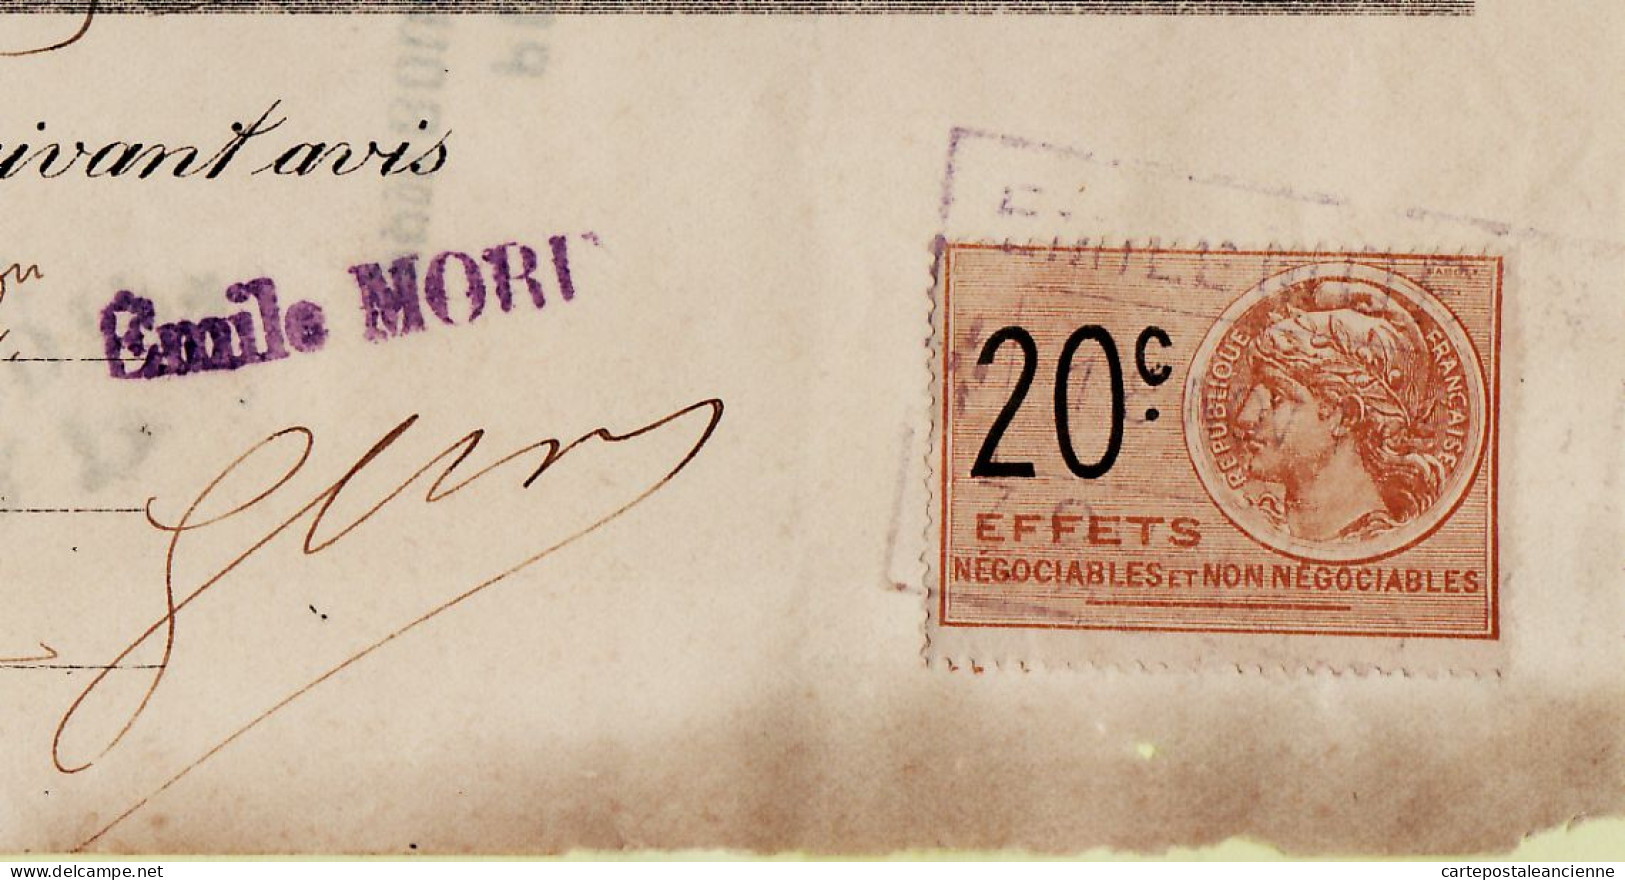 31267 / Carrosserie Armurerie MORIN Angers Lettre De Change 1925 à LUSSON Scierie Varades Timbre Fiscal 20cts - Lettres De Change